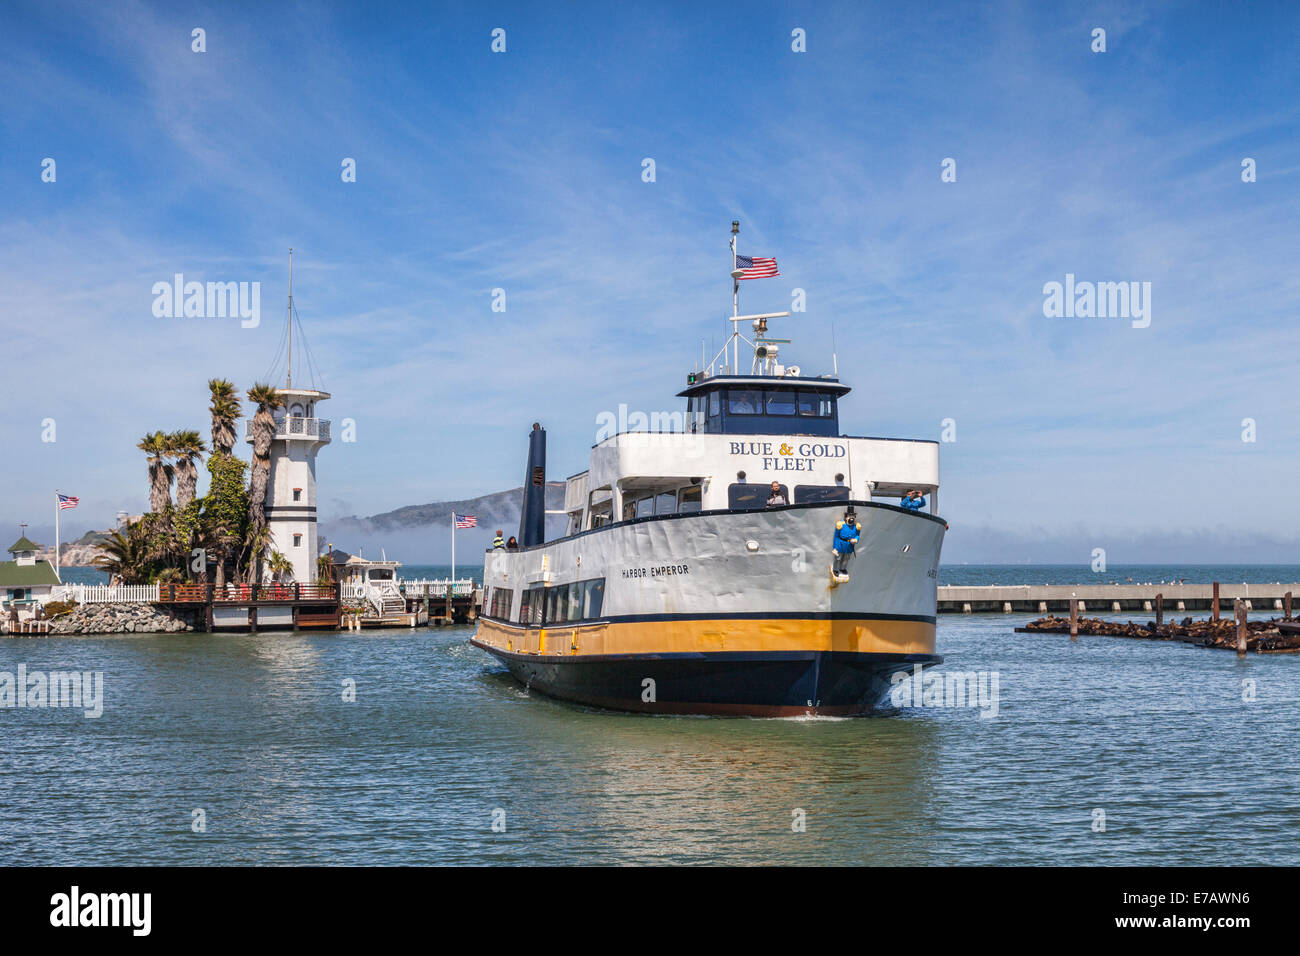 Bateau de croisière Harbor Emporor, du Blue and Gold Fleet, retourne à son poste à quai dans la baie de San Francisco près de Pier 39, passant entre Banque D'Images